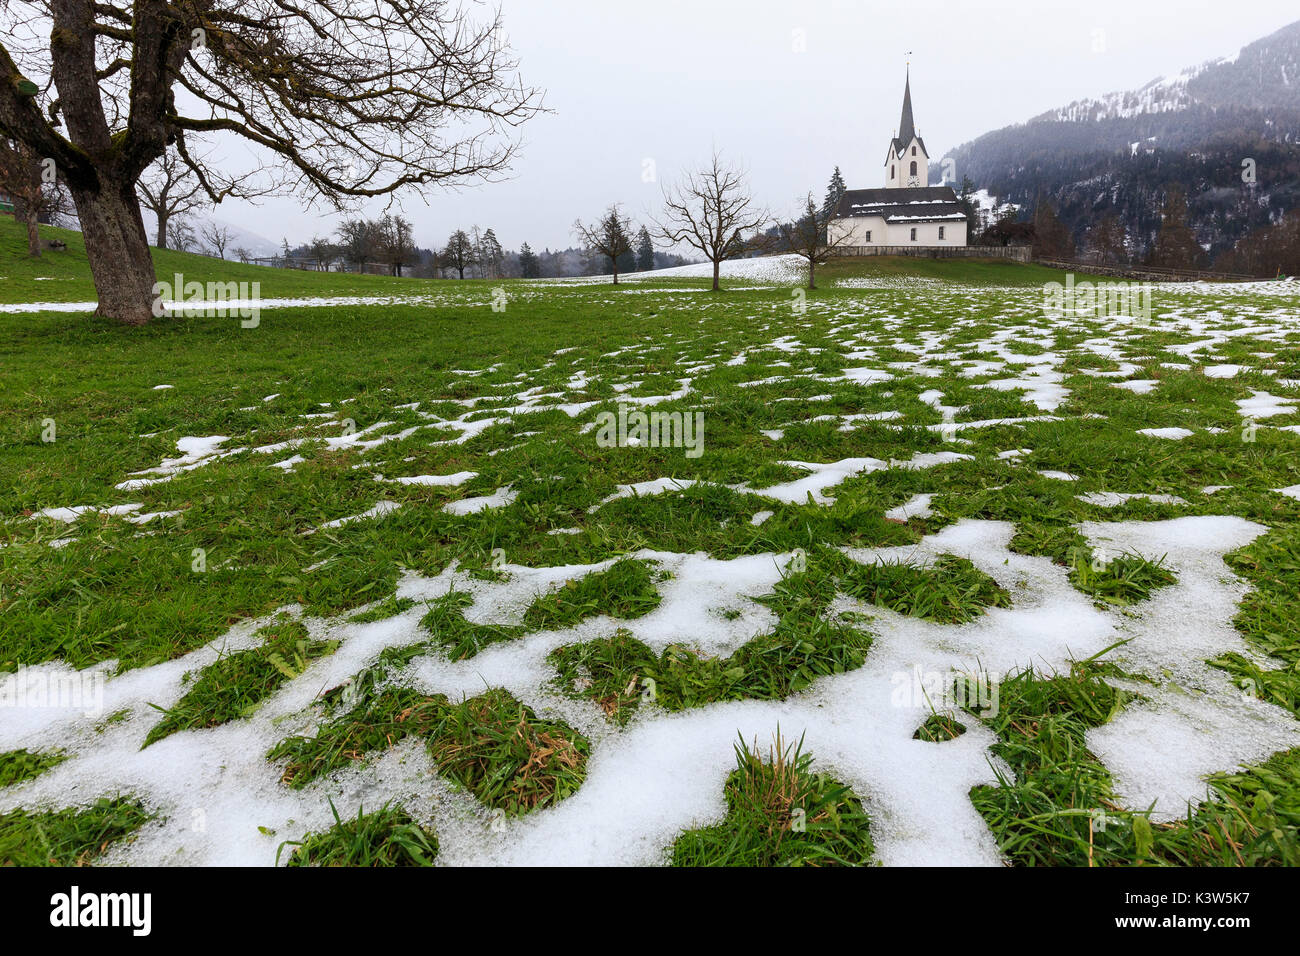 Lo scongelamento di neve nella chiesa del villaggio. Versam, Safiental, Surselva, Grigioni, Svizzera, Europa Foto Stock